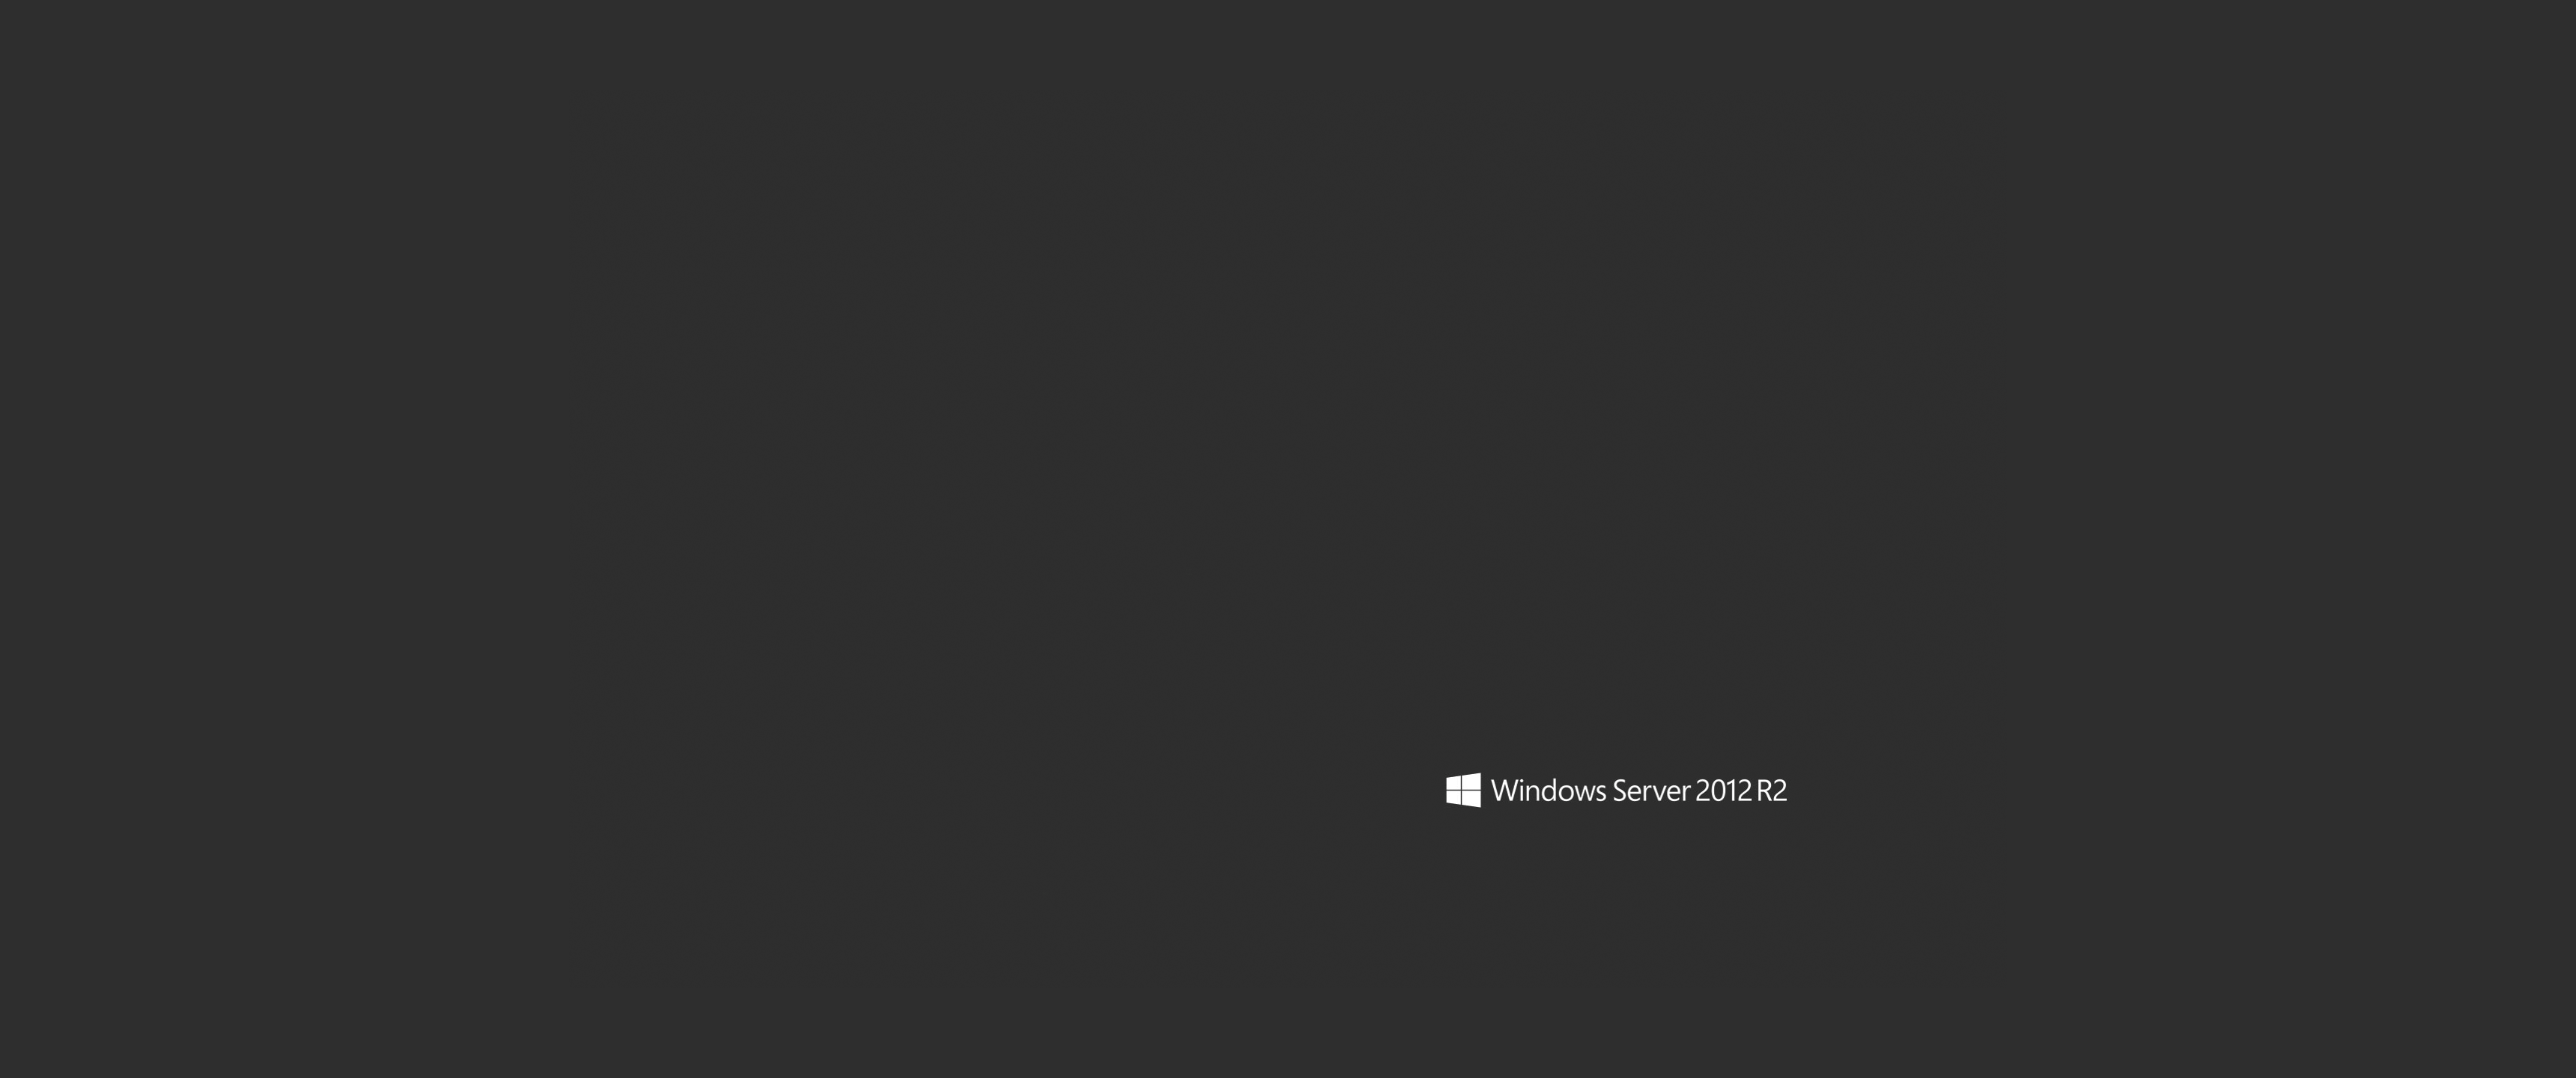 windows server 2012 r2 hintergrundbild,schwarz,text,braun,schriftart,himmel